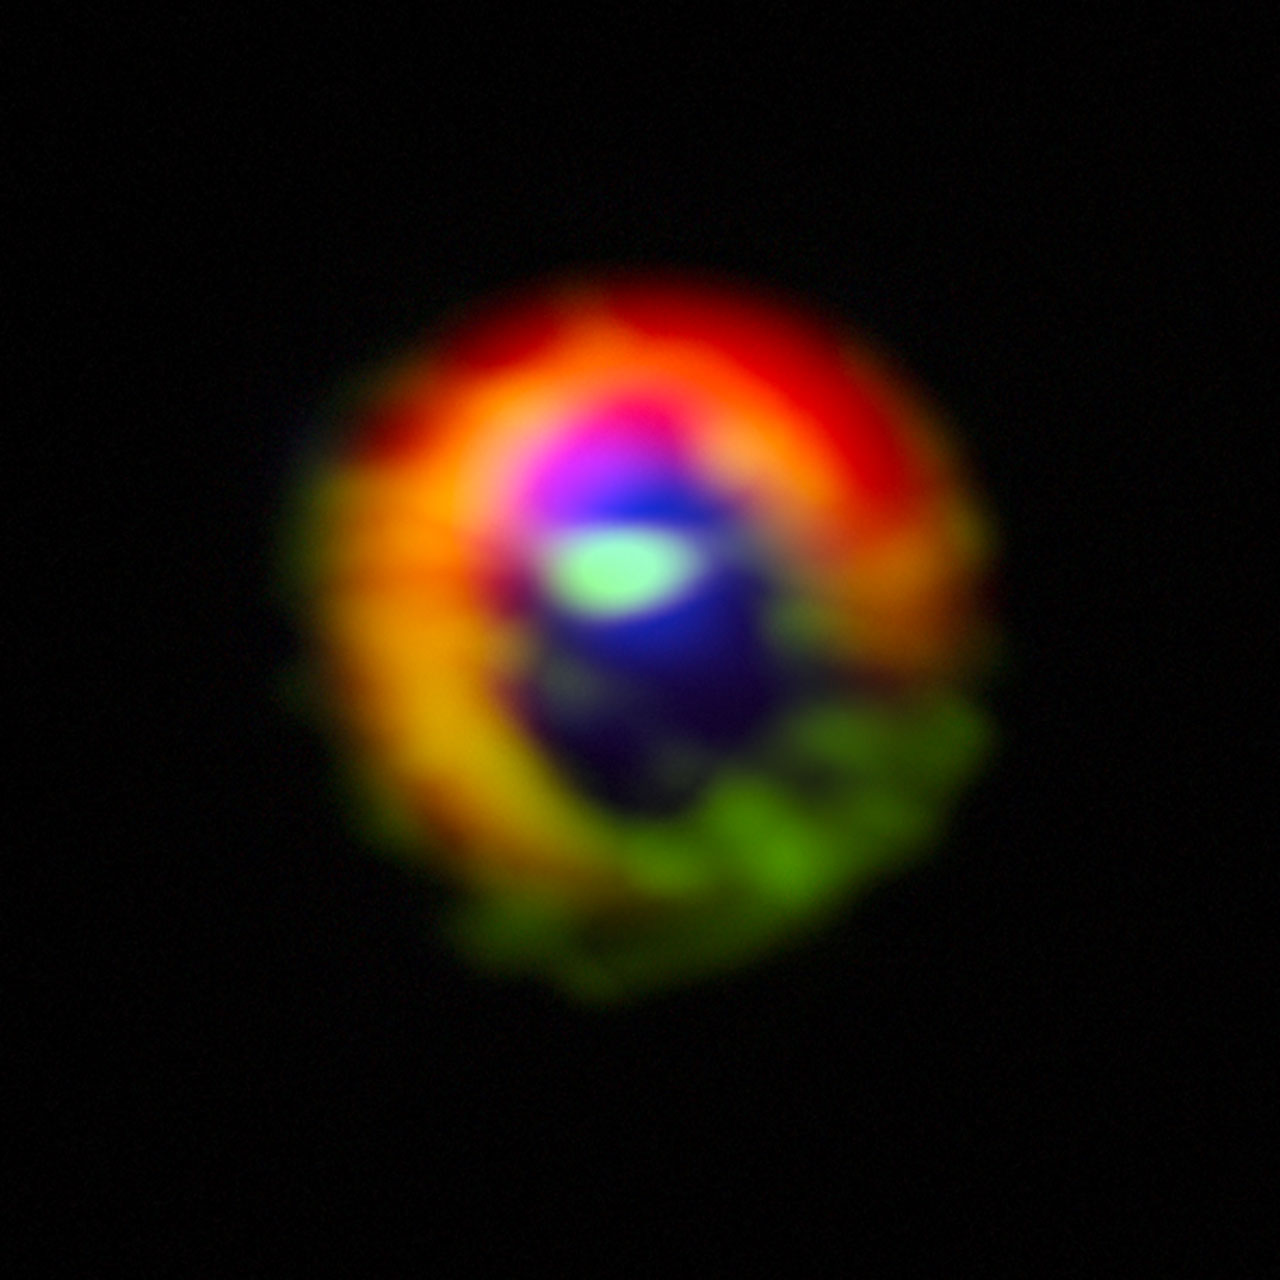 Les observations effectuées avec le télescope Alma du disque de gaz et de poussière cosmique autour de la jeune étoile HD 142527 montrent d'importants écoulements de gaz à travers un espace vide dans le disque. Il s'agit des premières observations directes de tels écoulements, que l'on suppose être engendrés par la consommation de gaz des planètes géantes au cours de leur croissance, et qui constituent un moment clé de la naissance des planètes géantes. © Alma (ESO, NAOJ, NRAO), S. Casassus et al.